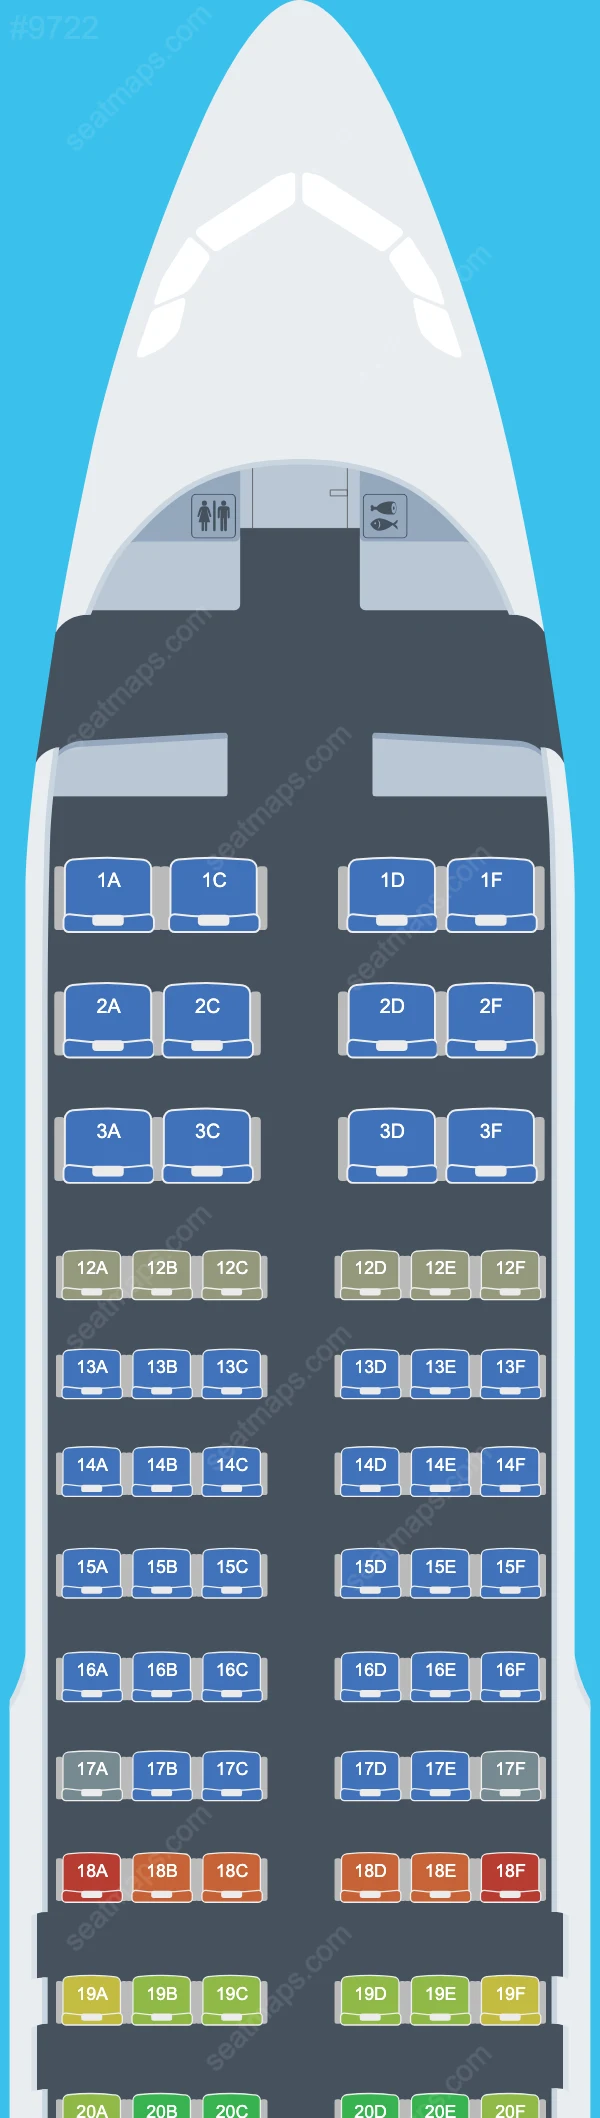 Air Canada Airbus A320 Seat Maps A320-200 V.2